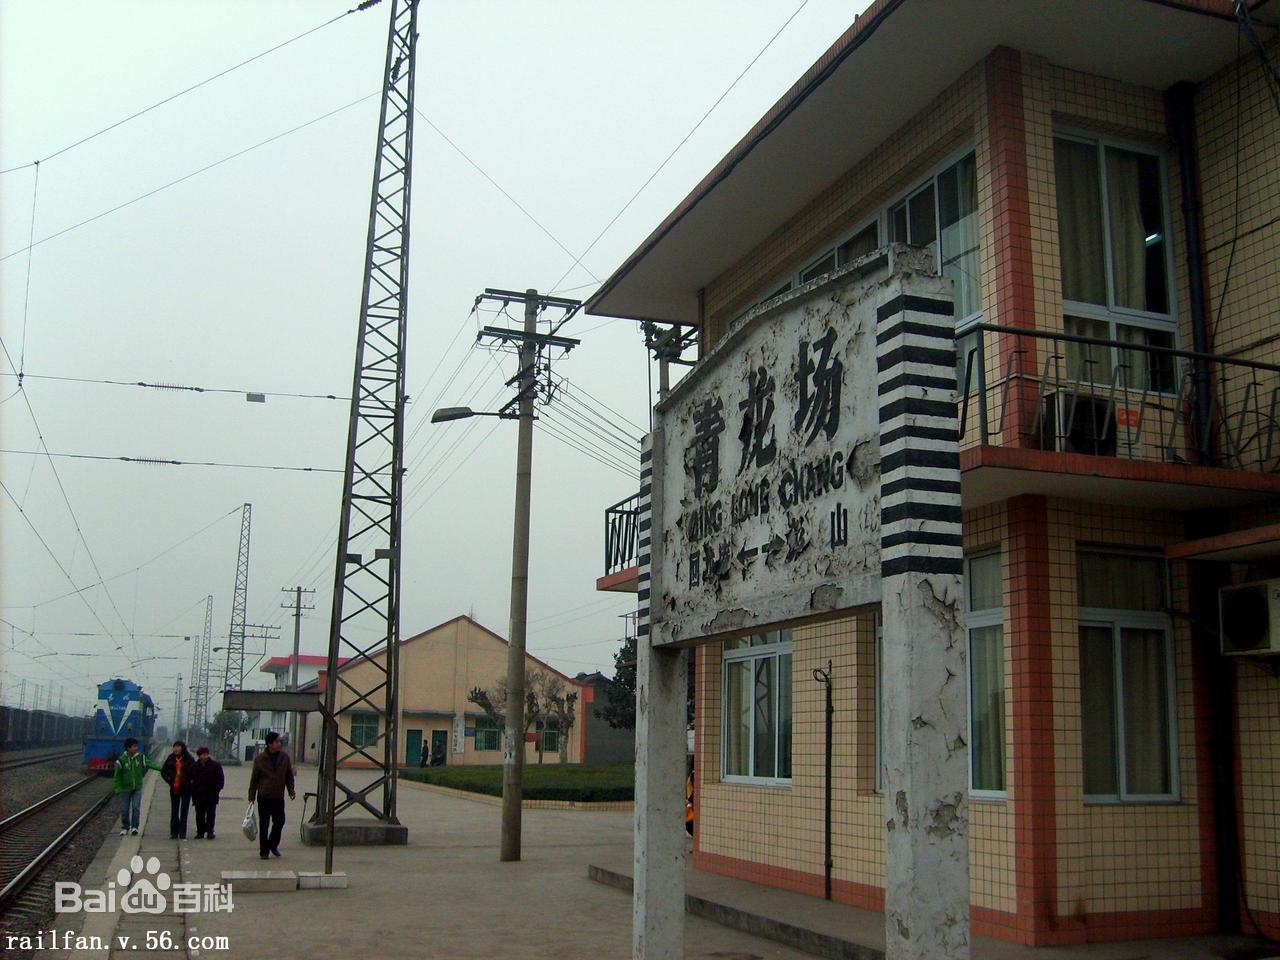 青龙场站 青龙场站位于中国四川省眉山市彭山区,是中国铁路成都局集团